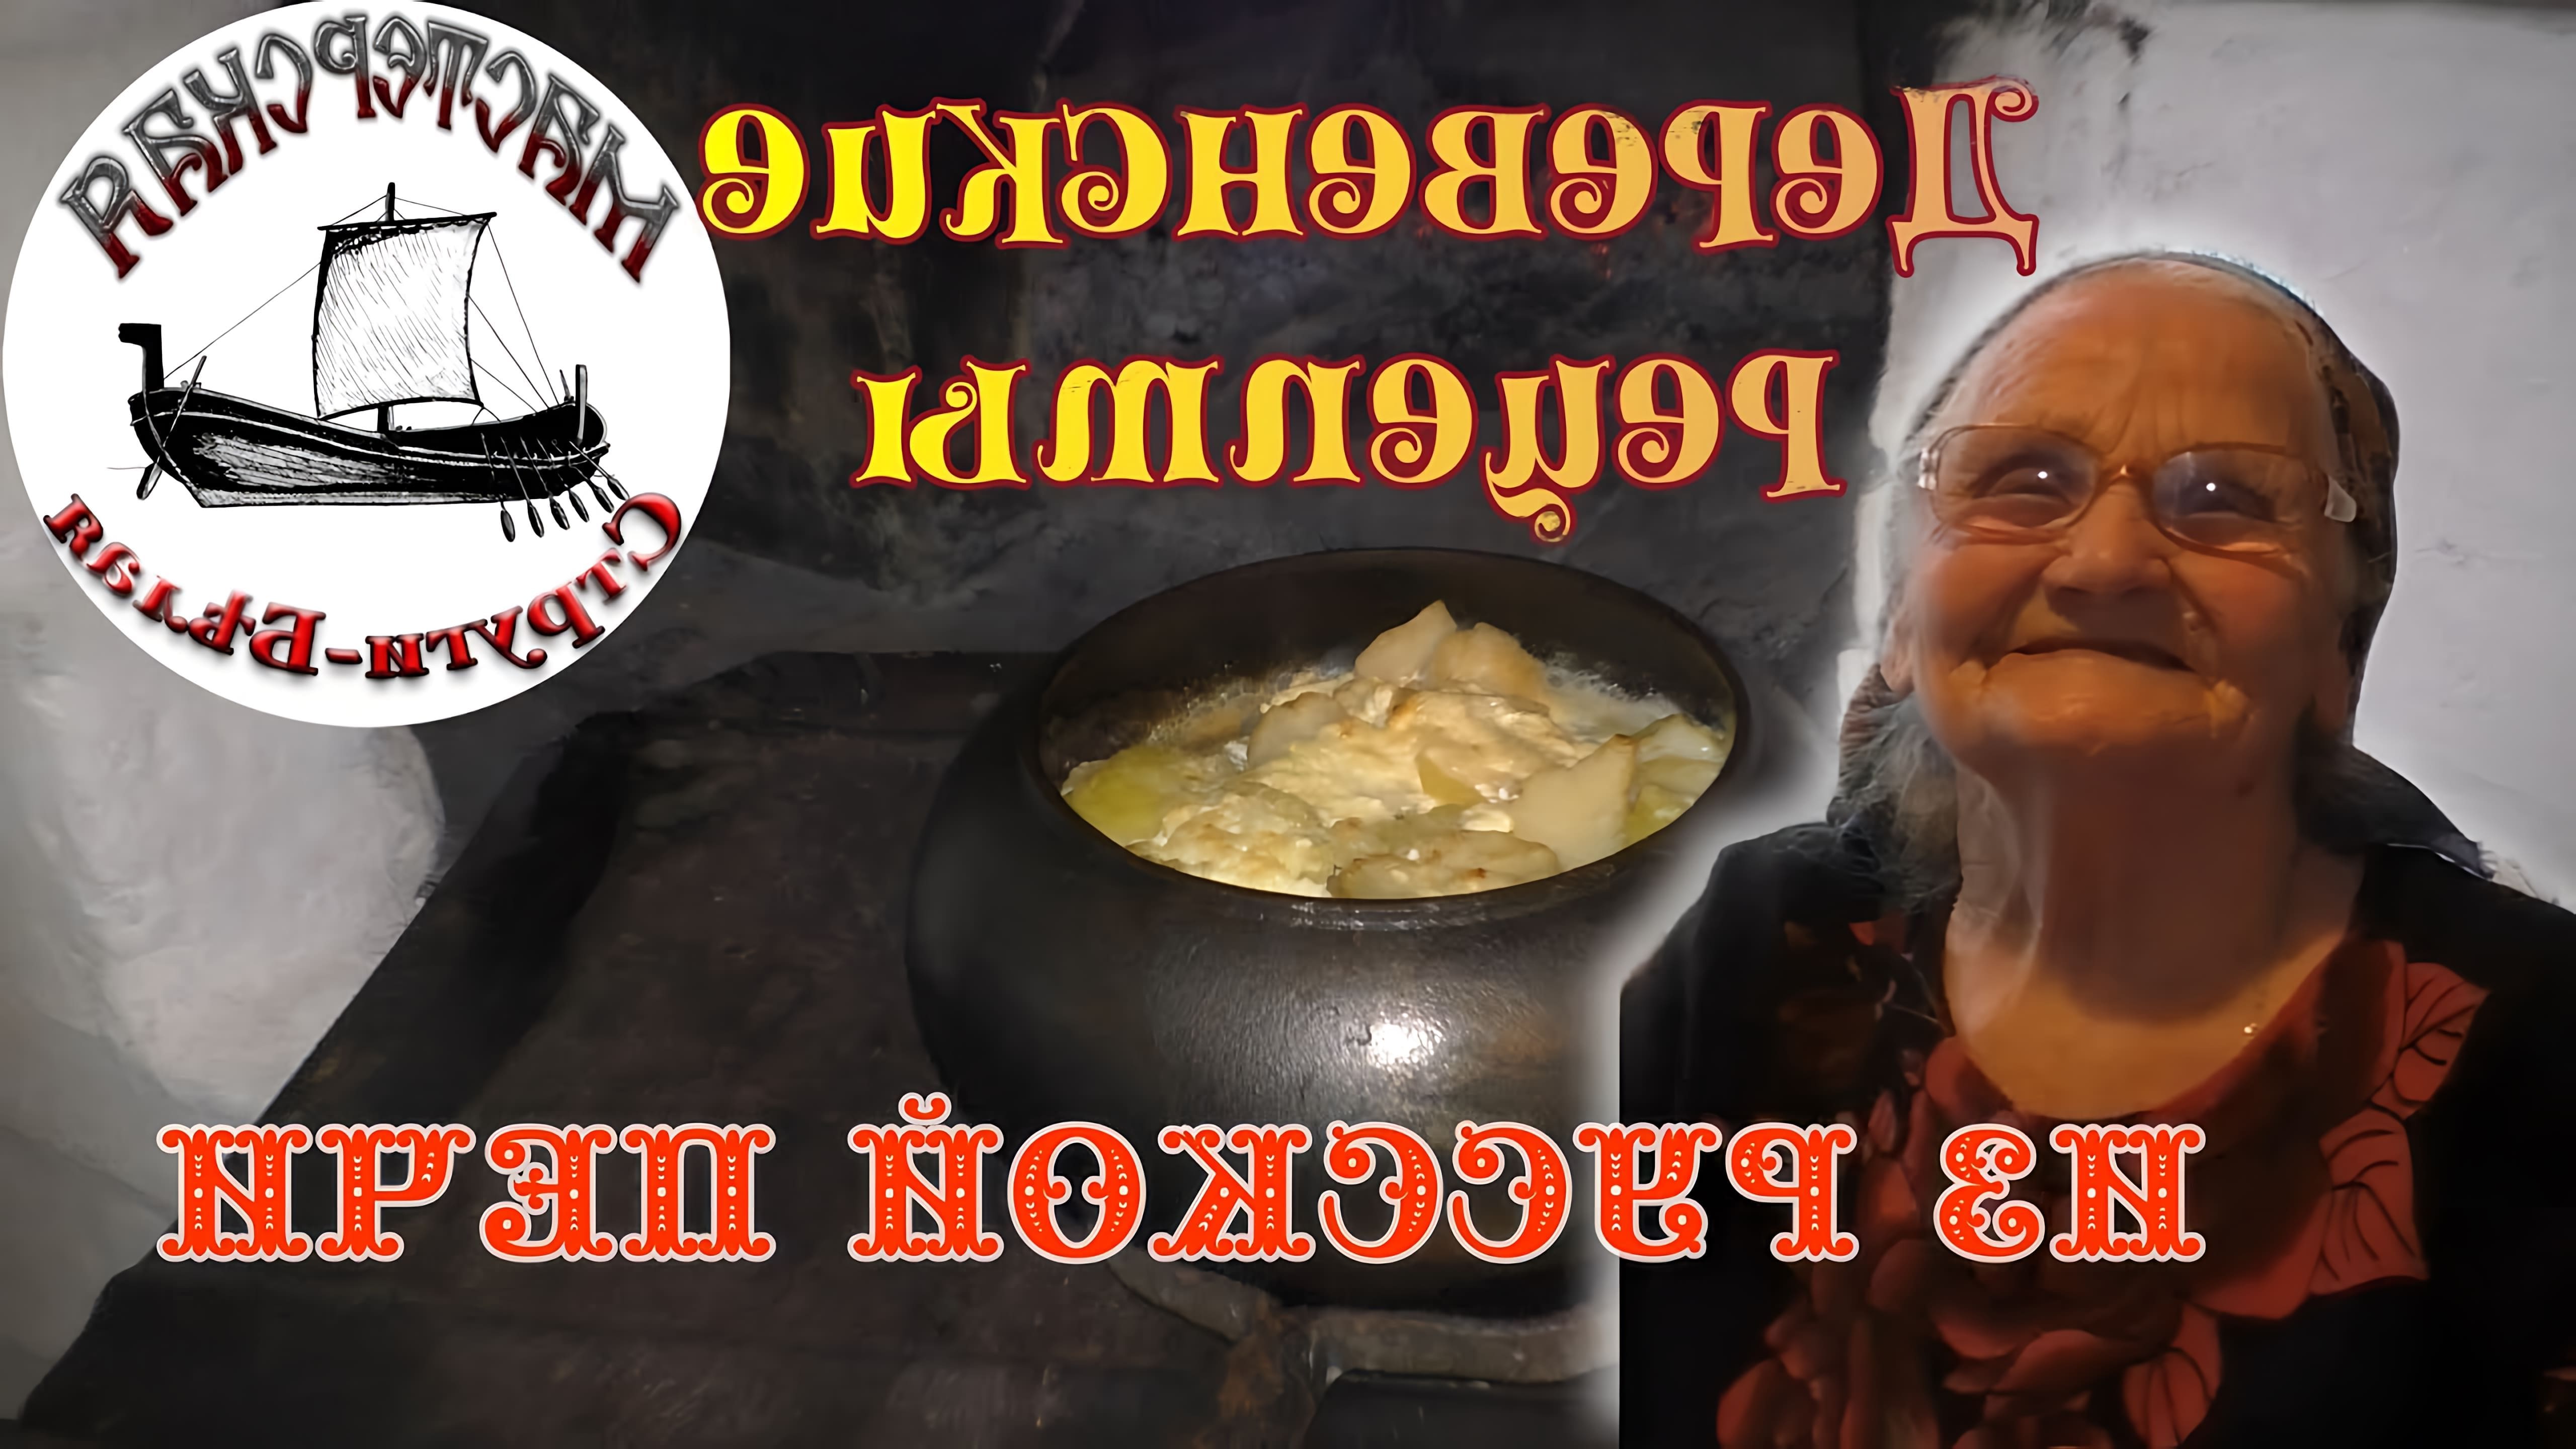 В этом видео рассказывается о приготовлении блюда "орешник" в русской печи по деревенскому рецепту